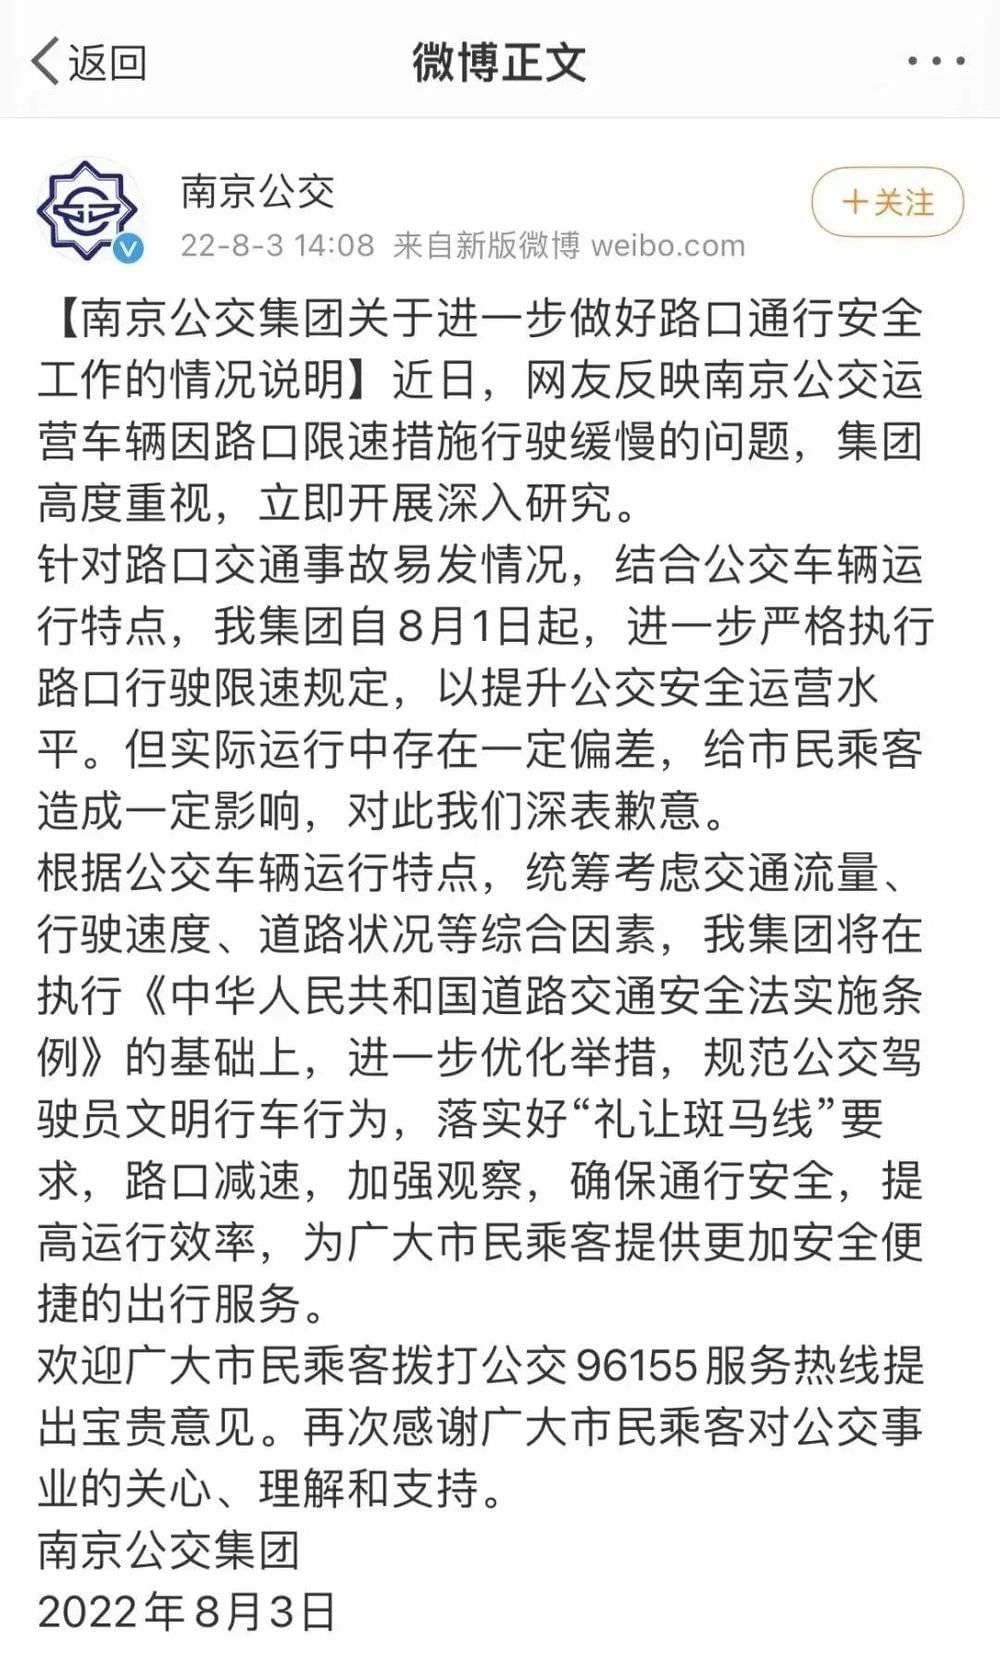 南京公交的致歉声明。/新浪微博@南京公交<br>